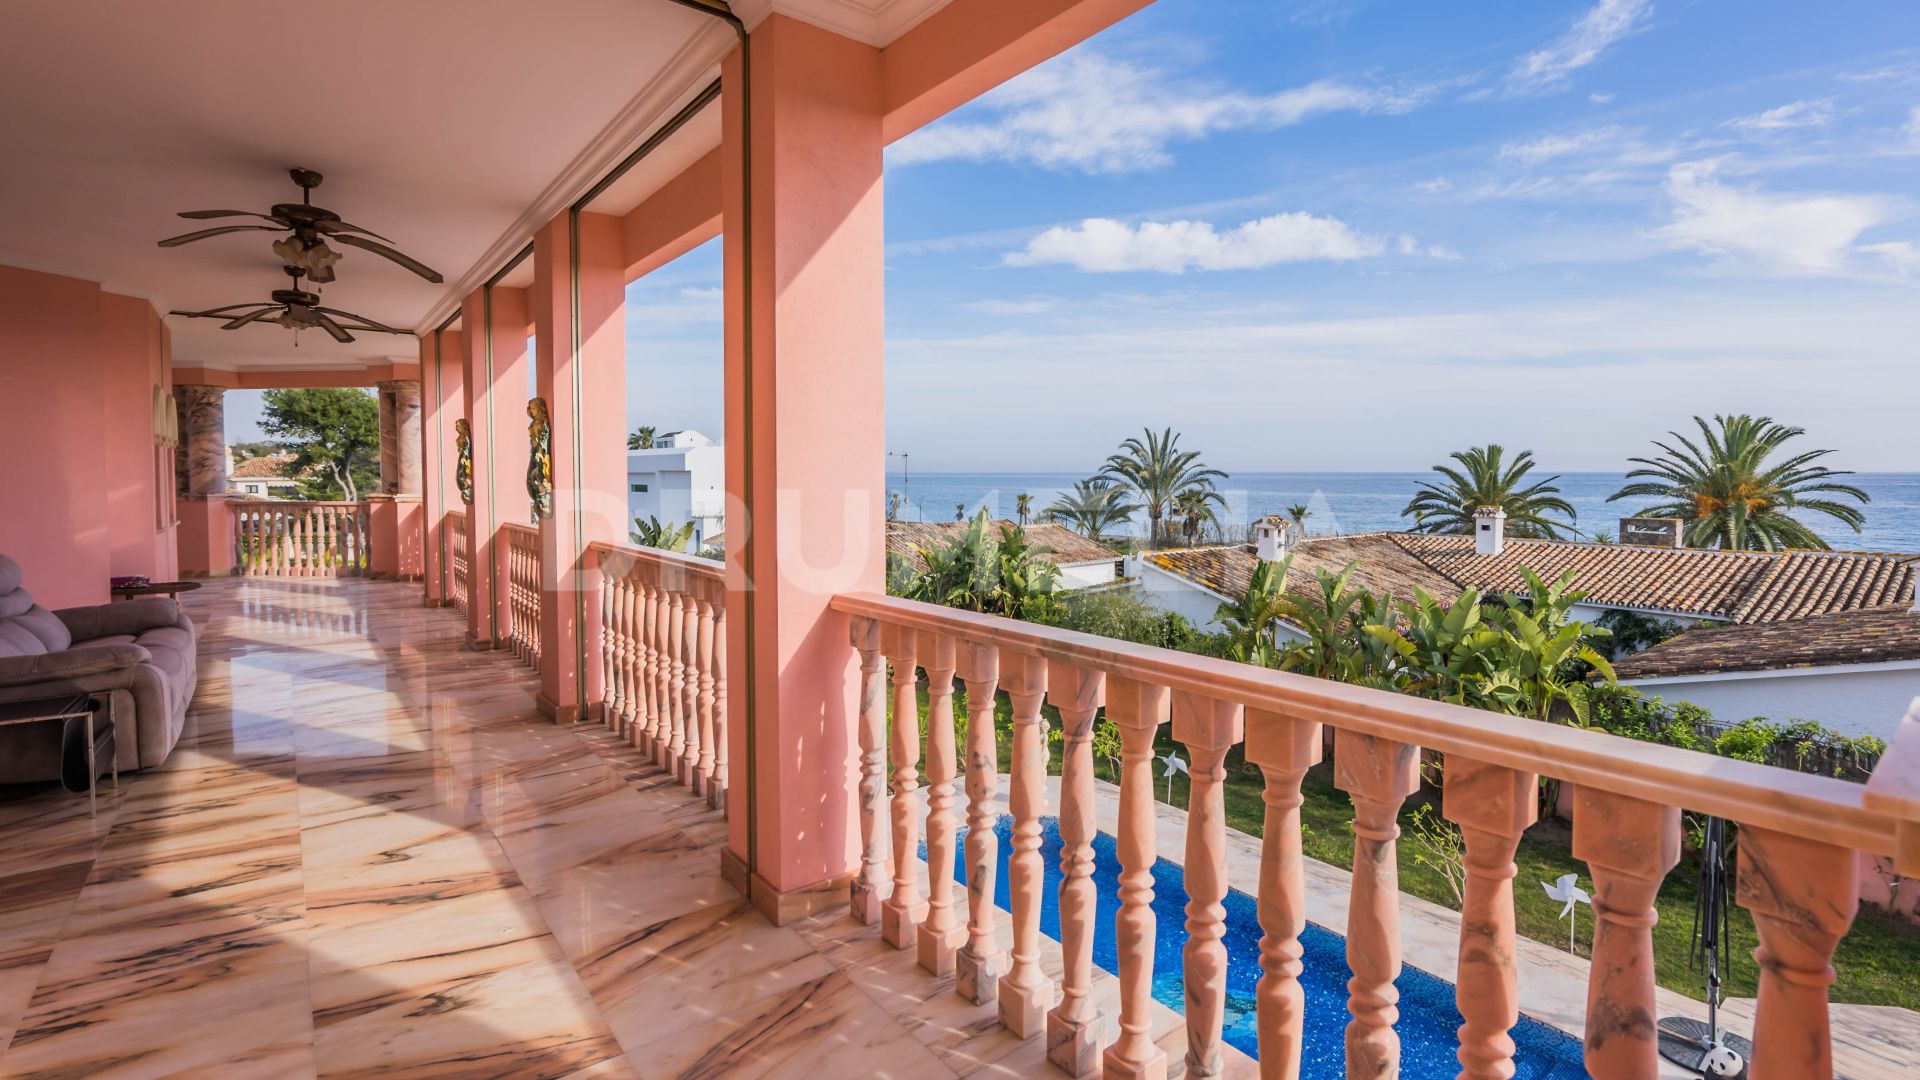 Villa de estilo italiano con estilo palaciego y vistas al mar, El Saladillo, Estepona